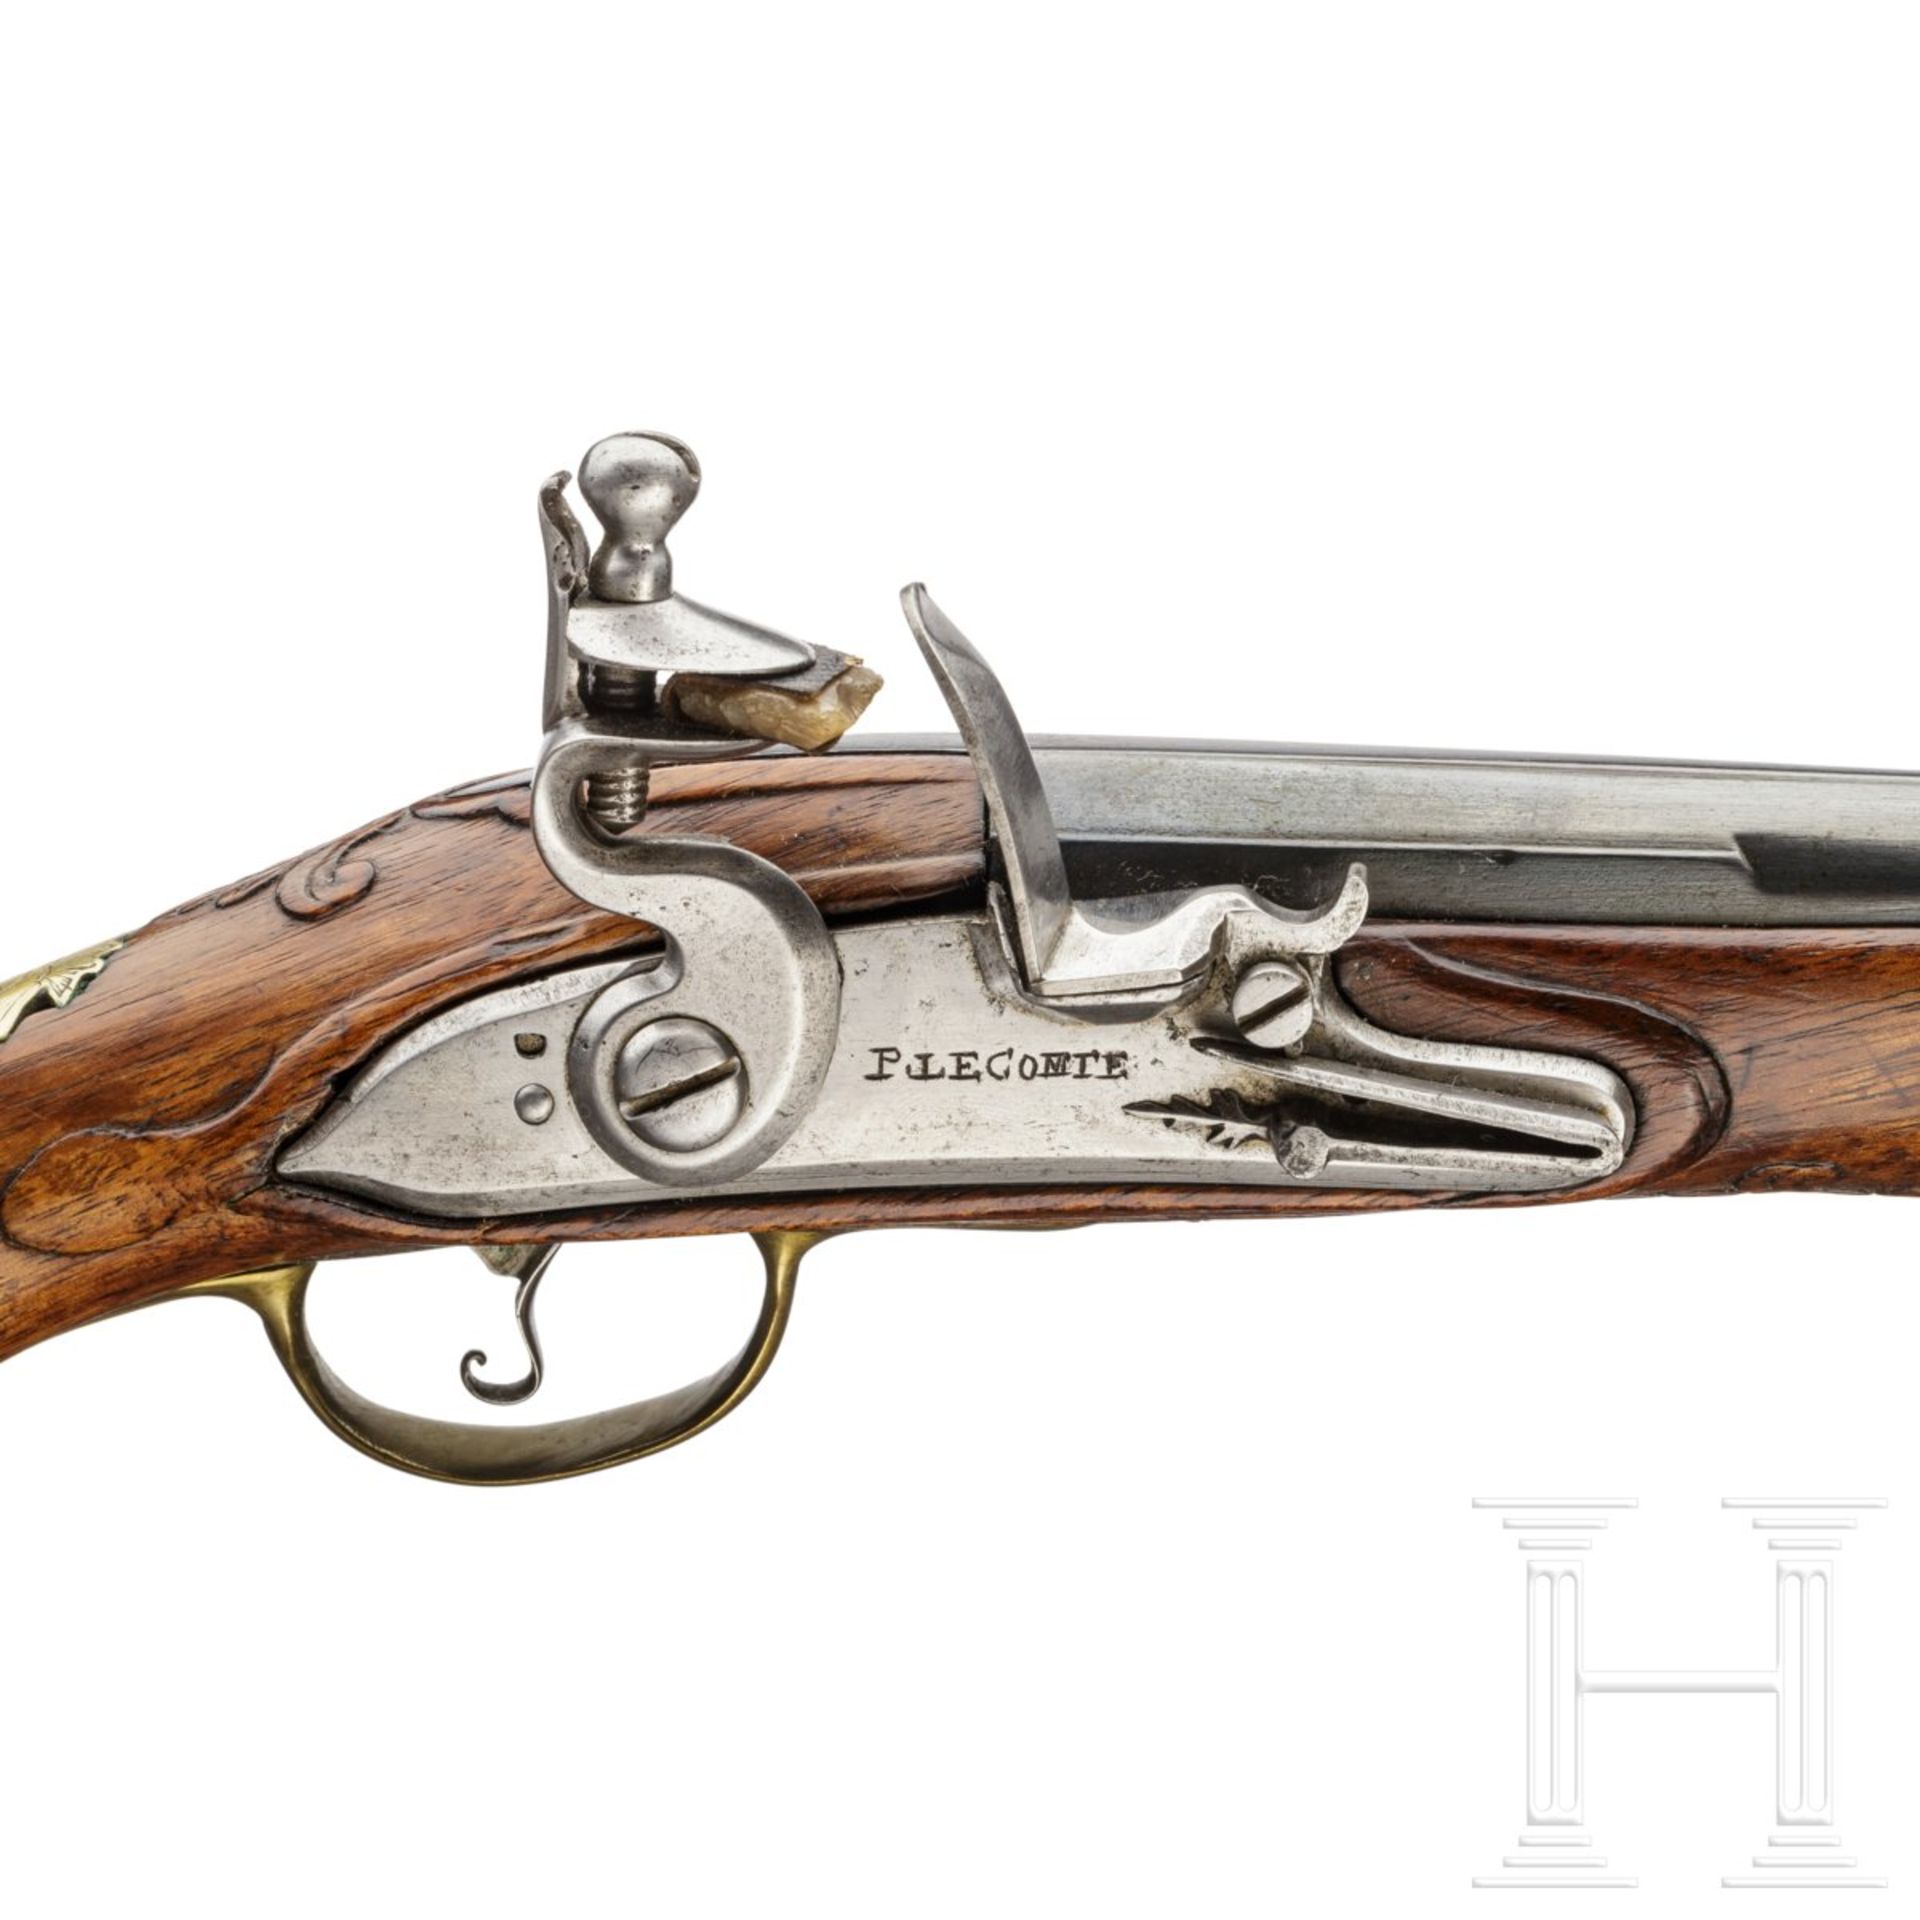 Kavallerie-Steinschlosspistole für einen Offizier der Schomberg-Dragoner, Trageweise ab 1762 - Bild 5 aus 7